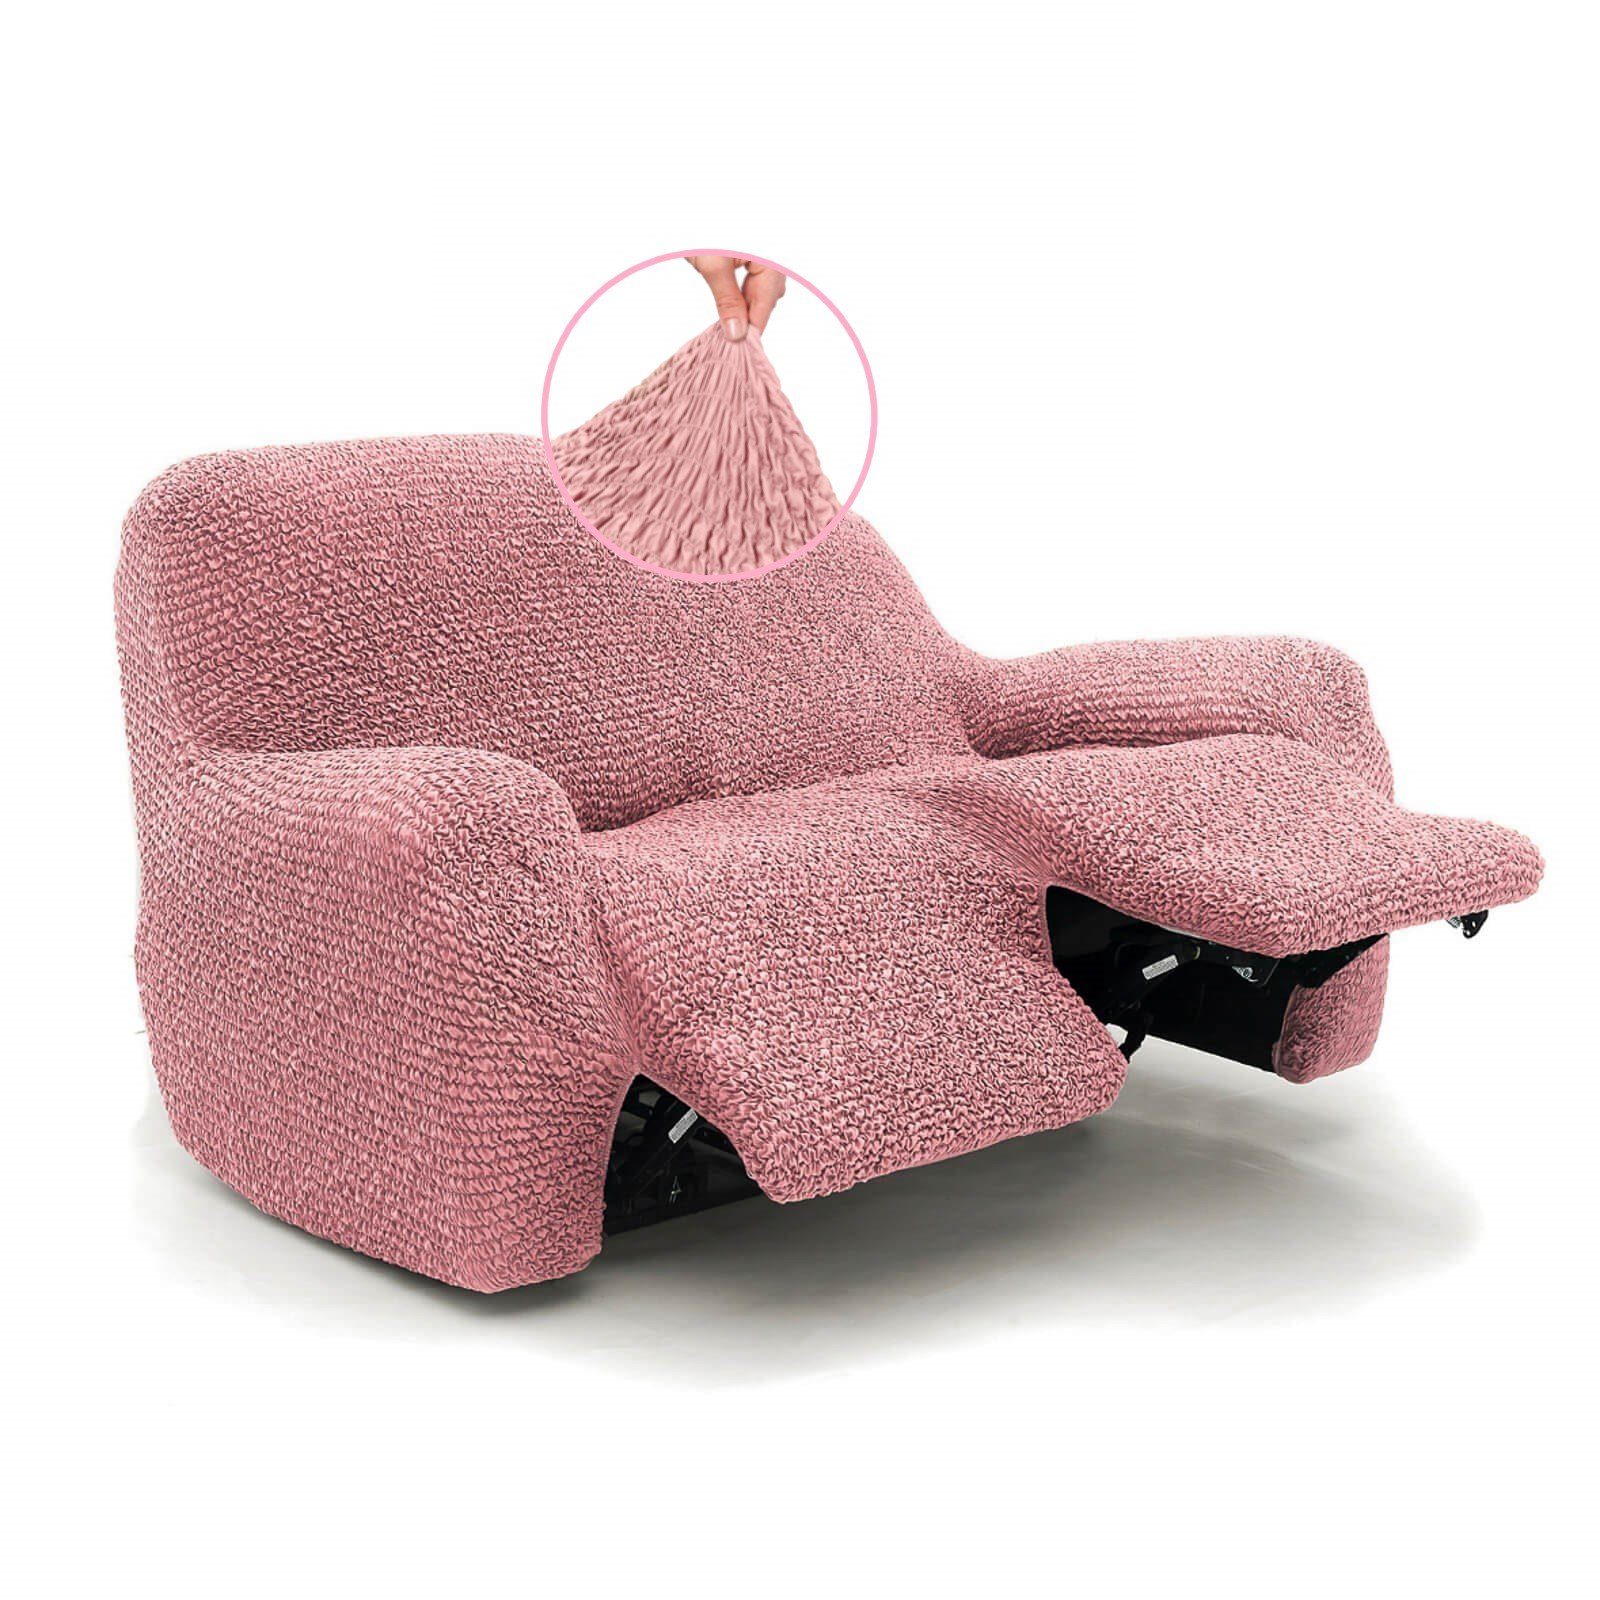 Sofahusse Bezug für Relaxsofa 2-Sitzer, italienische Handarbeit, Paulato by GA.I.CO, elastischer hochwertiger Mikrofaserstoff